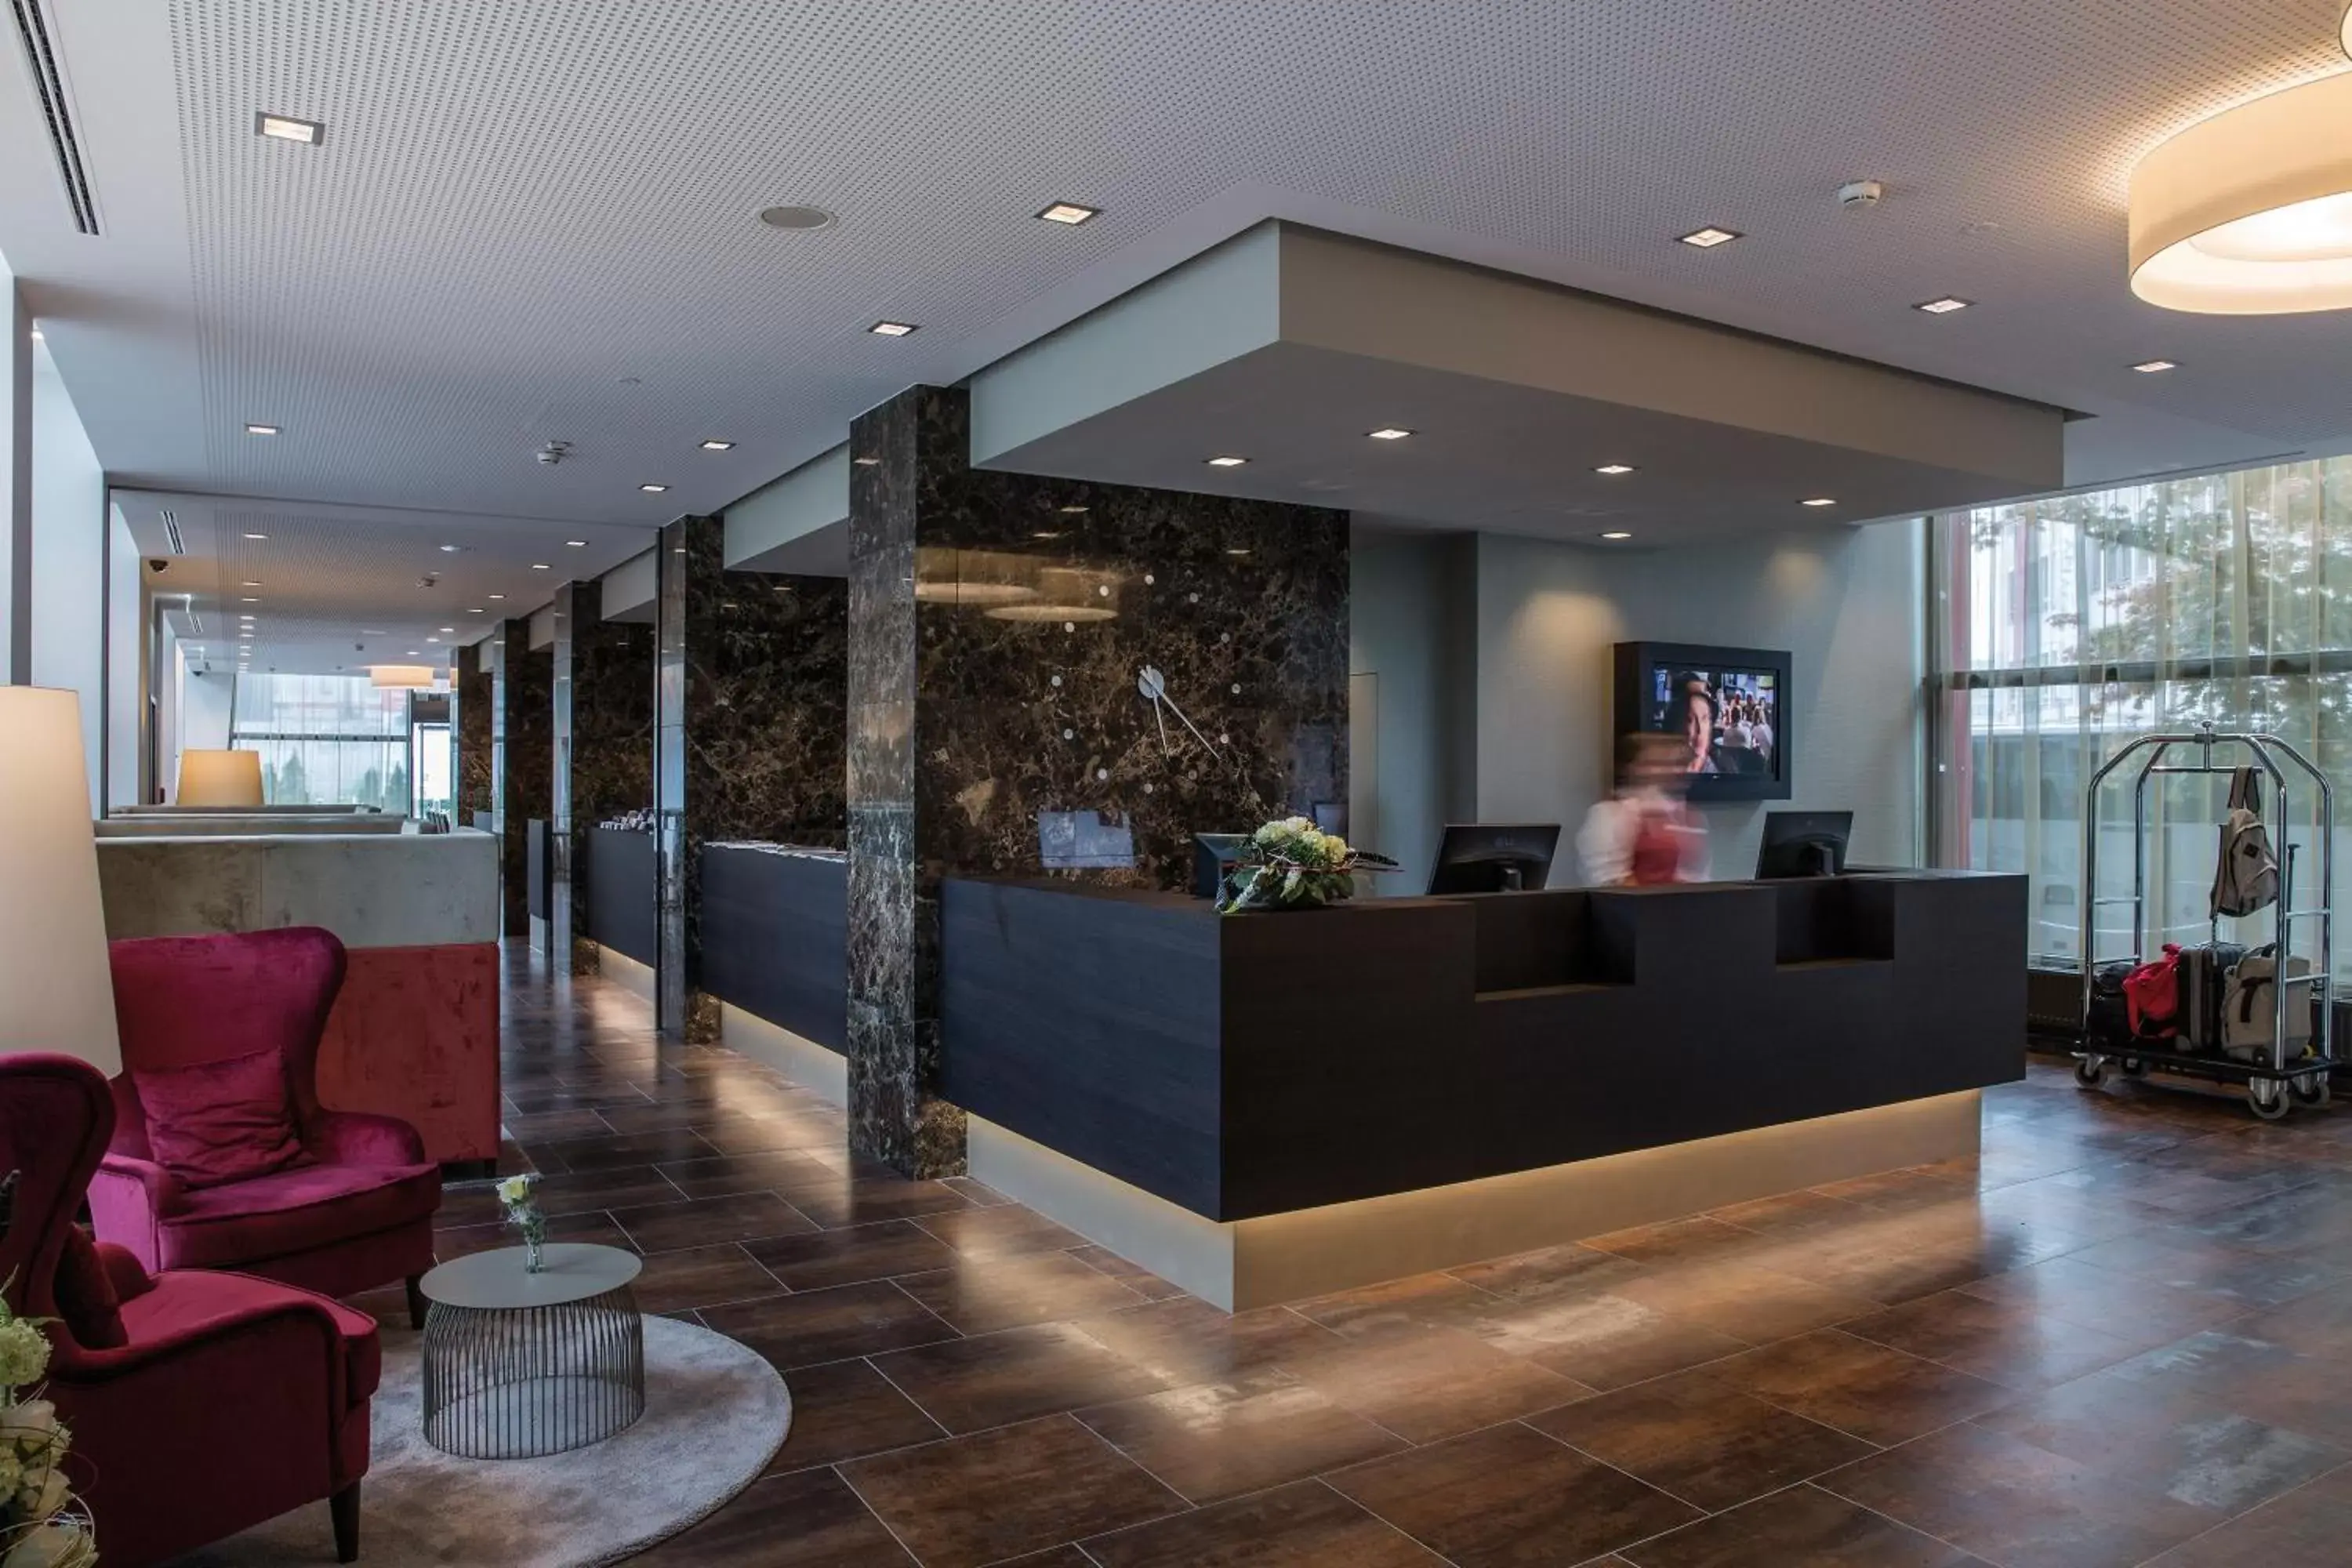 Lobby or reception, Lobby/Reception in Austria Trend Hotel Europa Salzburg